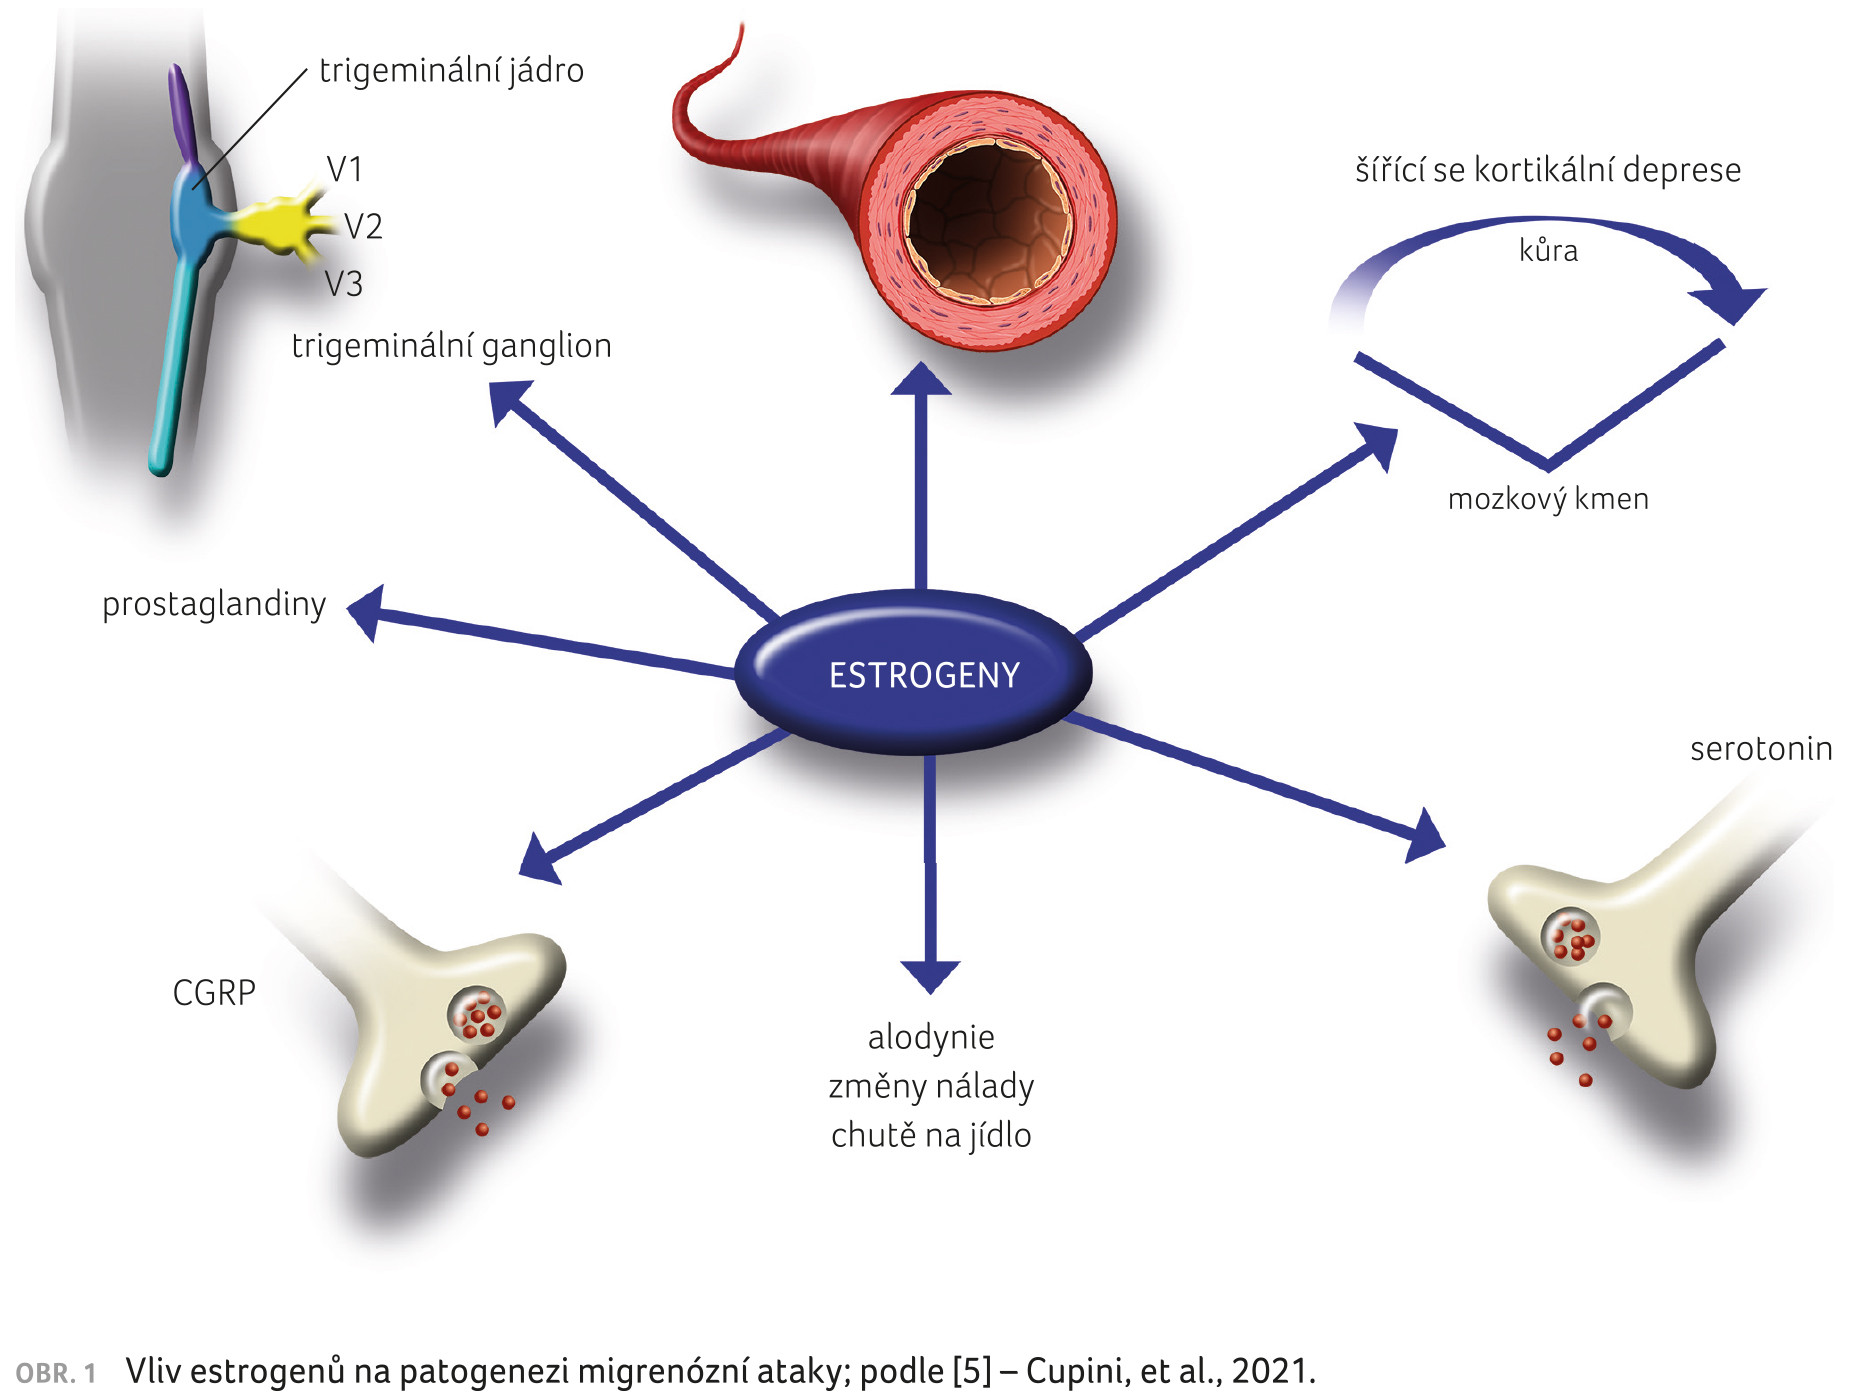 OBR. 1 Vliv estrogenů na patogenezi migrenózní ataky; podle [5] – Cupini, et al., 2021